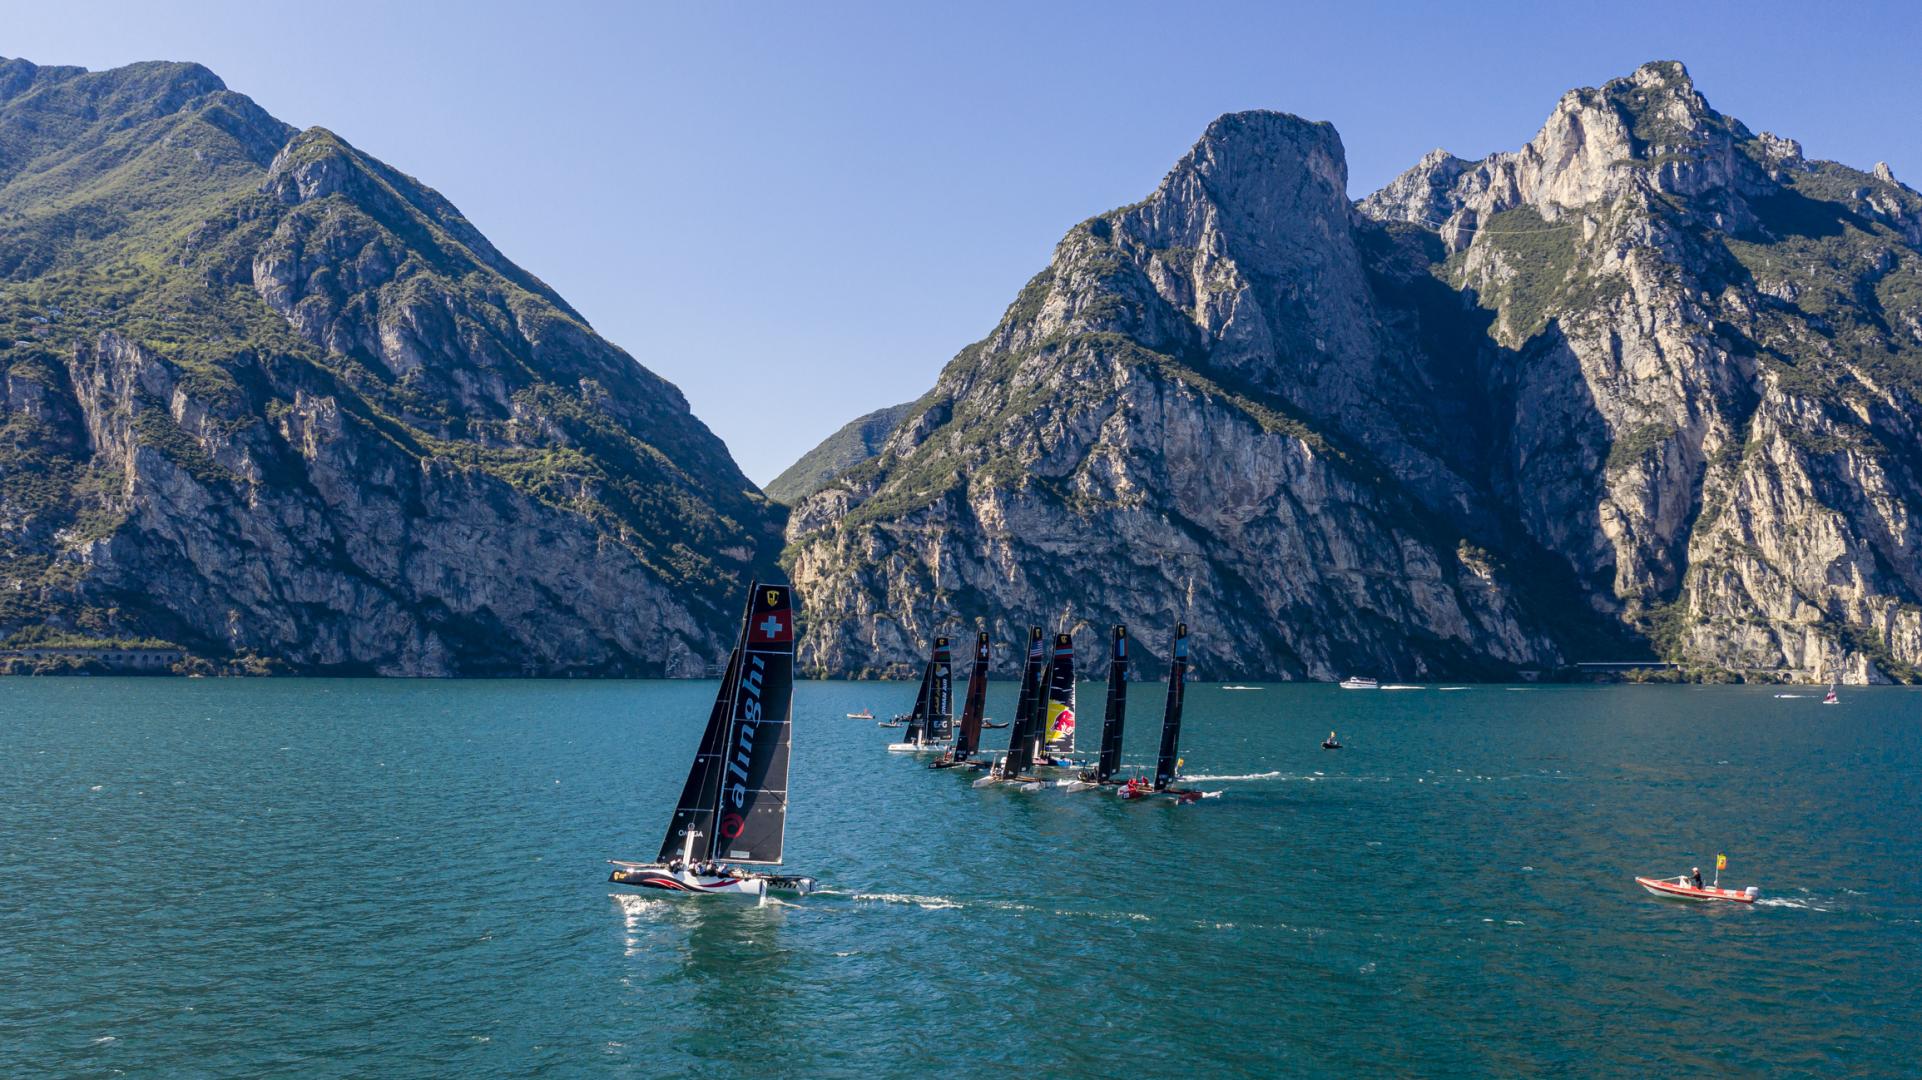 Il meraviglioso scenrio del Garda con le Dolomiti sullo sfondo. Foto: Sailing Energy / GC32 Racing Tour.